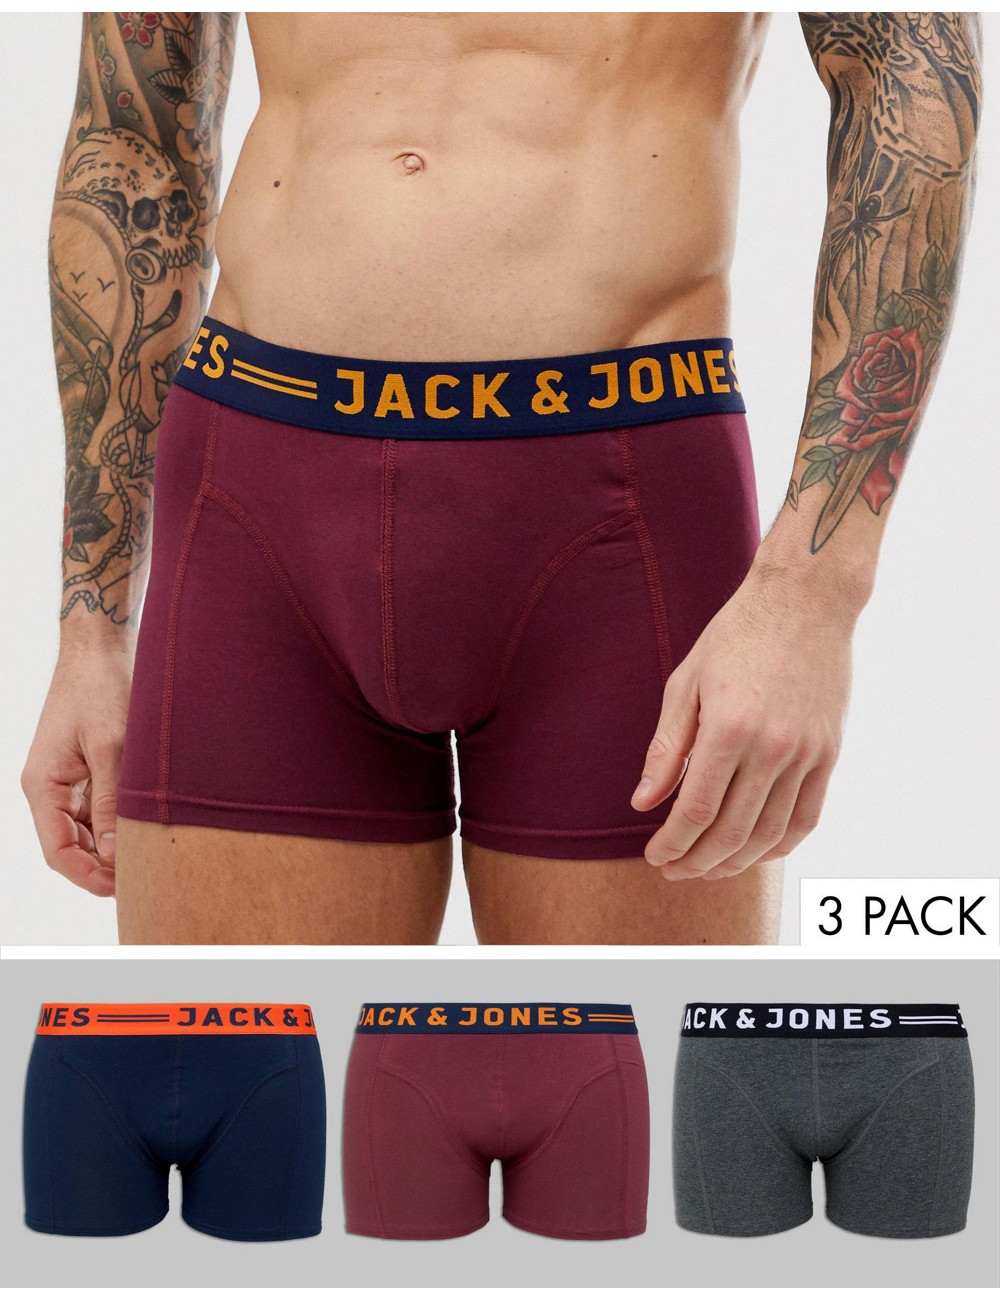 Jack & Jones trunks 3 pack...